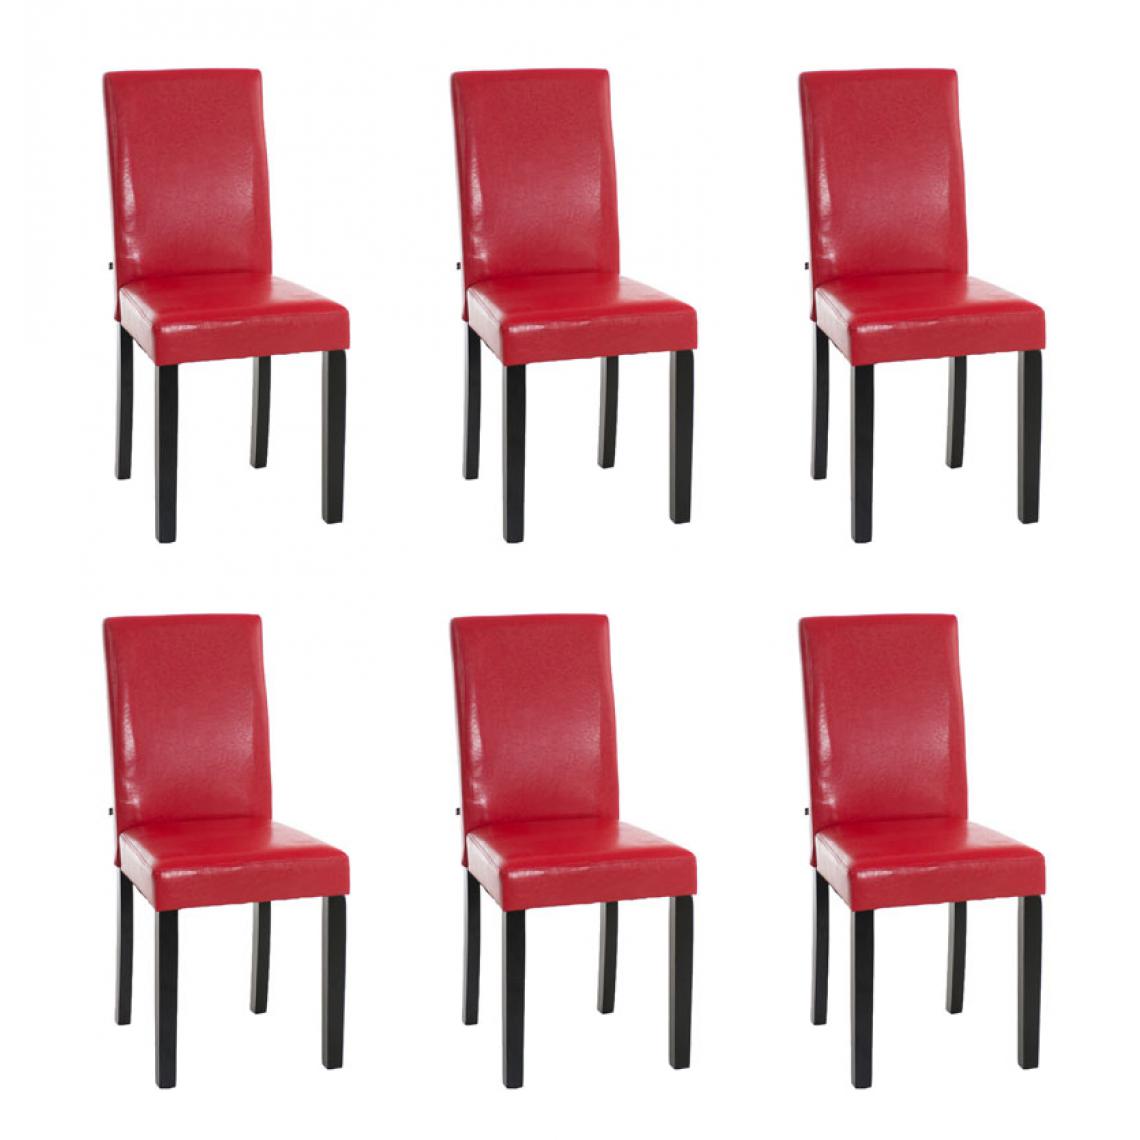 Icaverne - Moderne Lot de 6 chaises de salle à manger gamme Rabat noir couleur rouge - Chaises